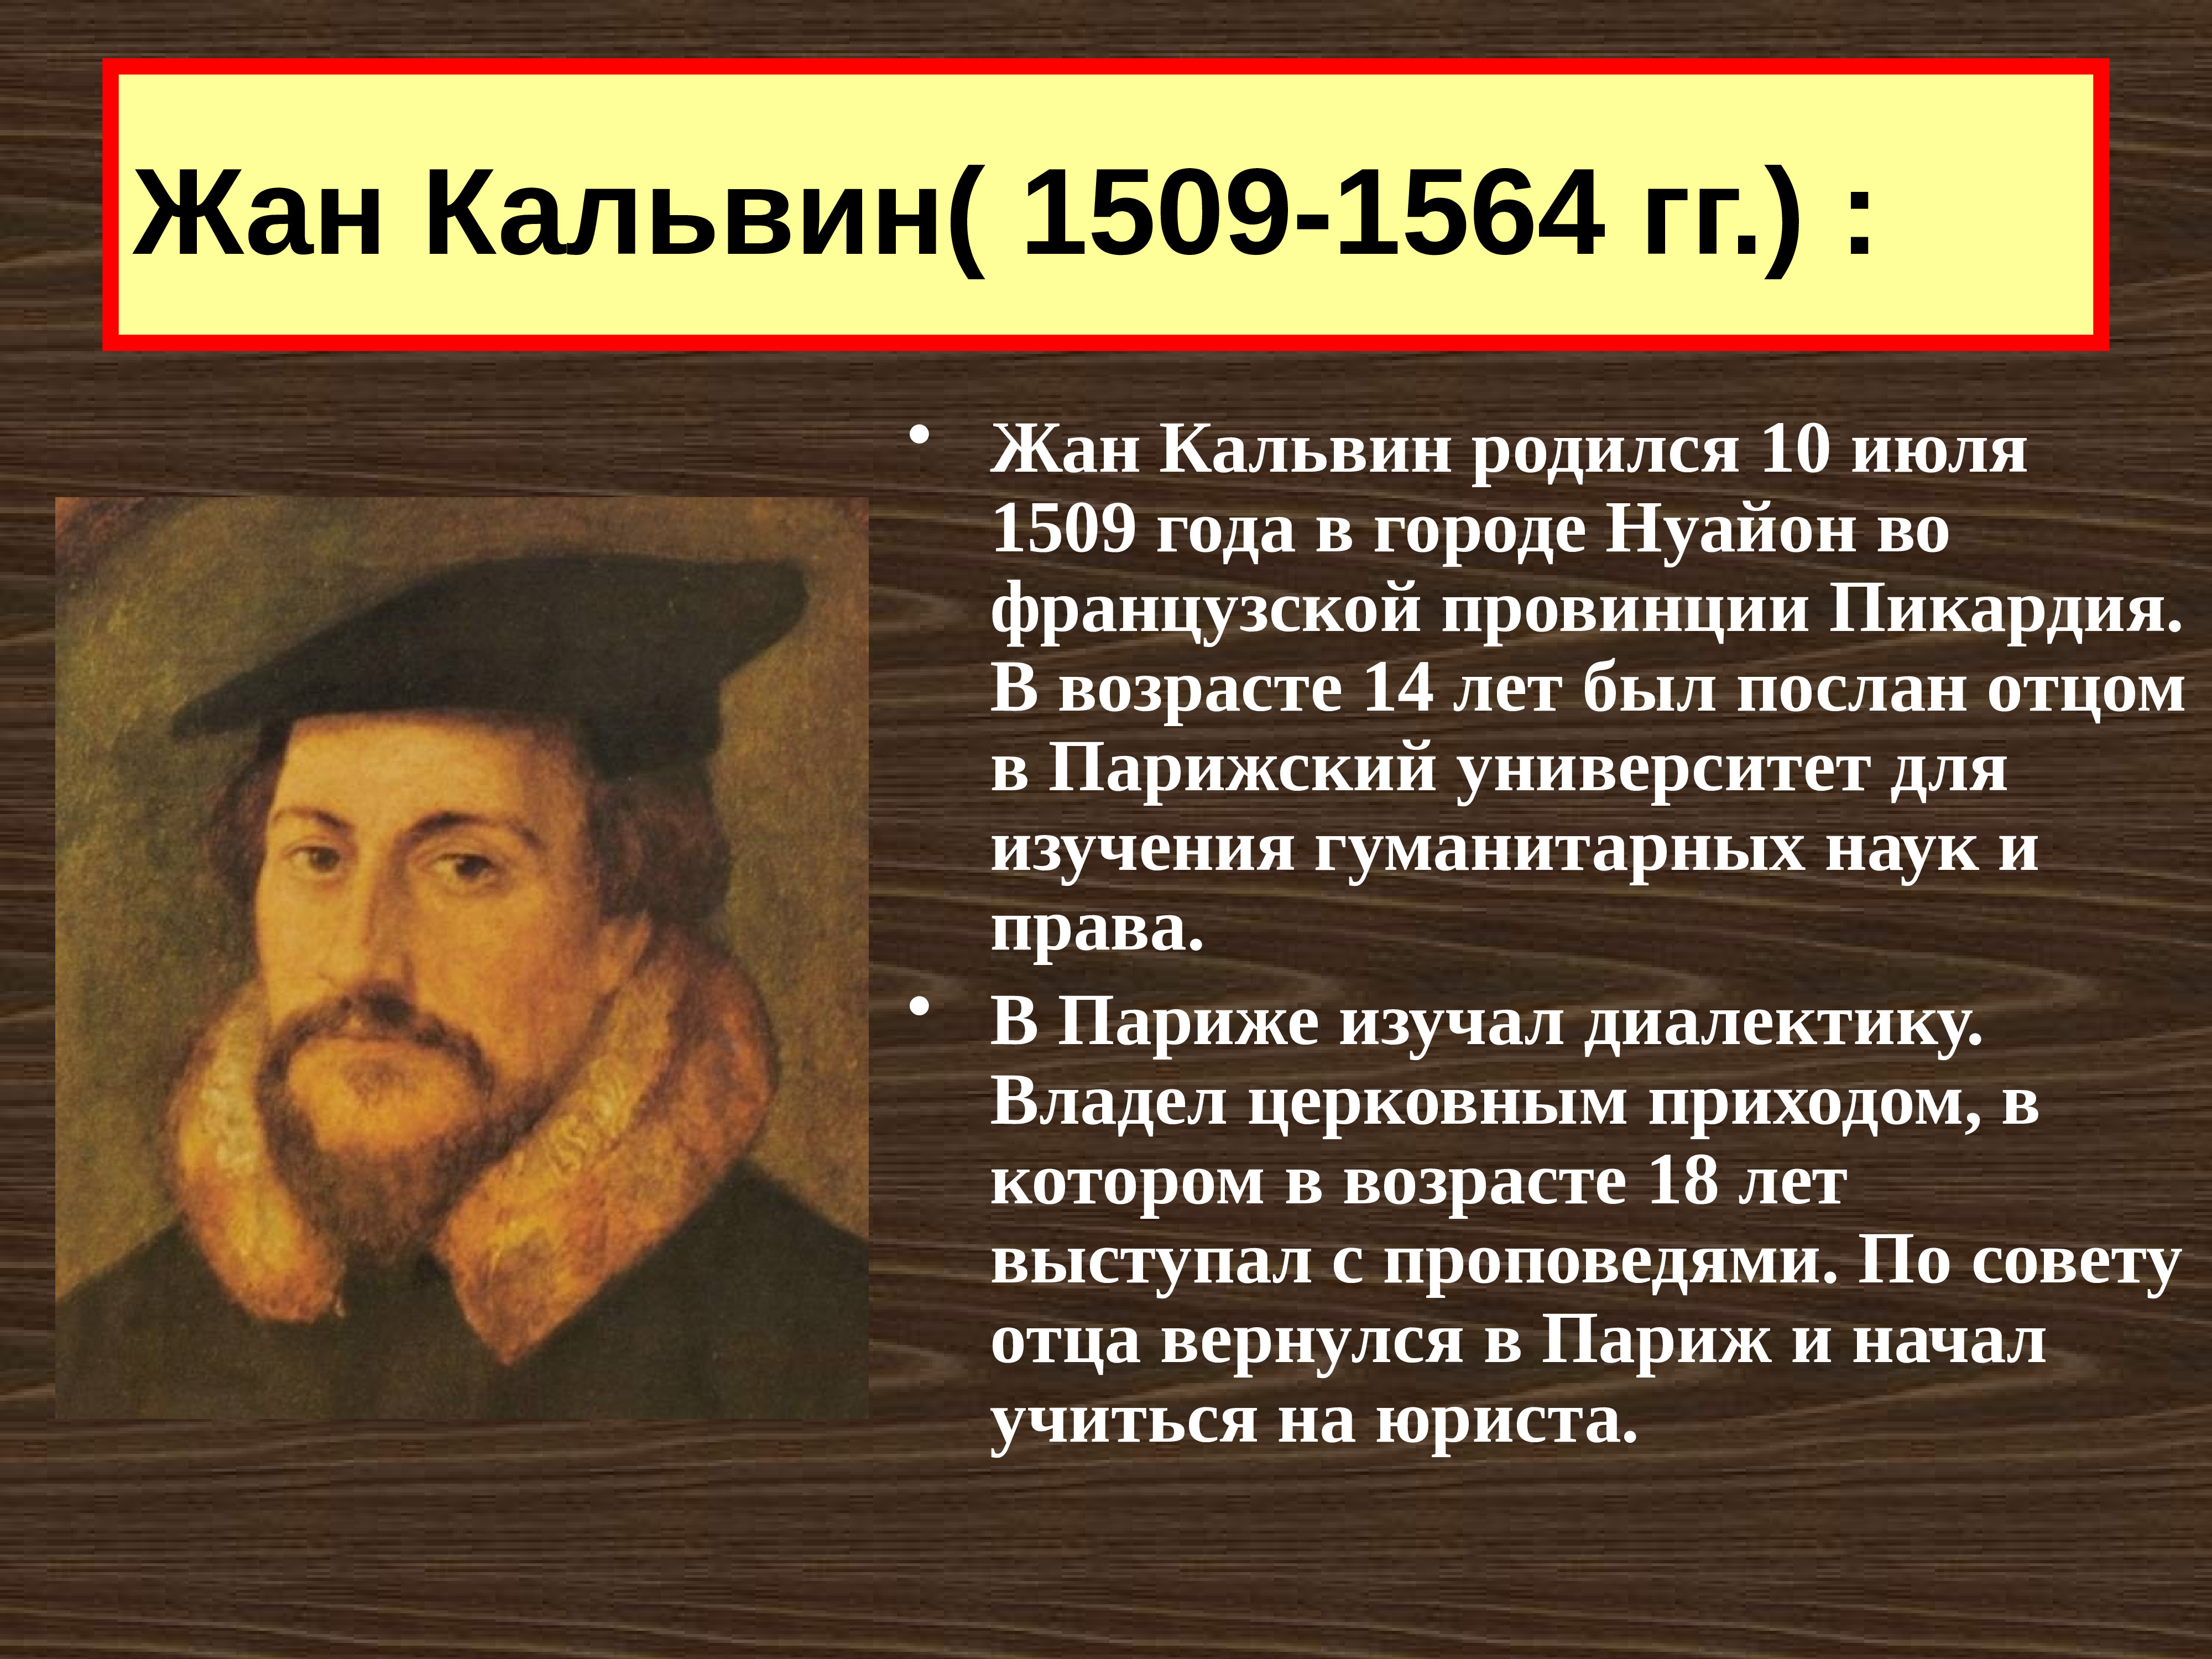 Реформация европе презентация. Жана Кальвина (1509-1564)..